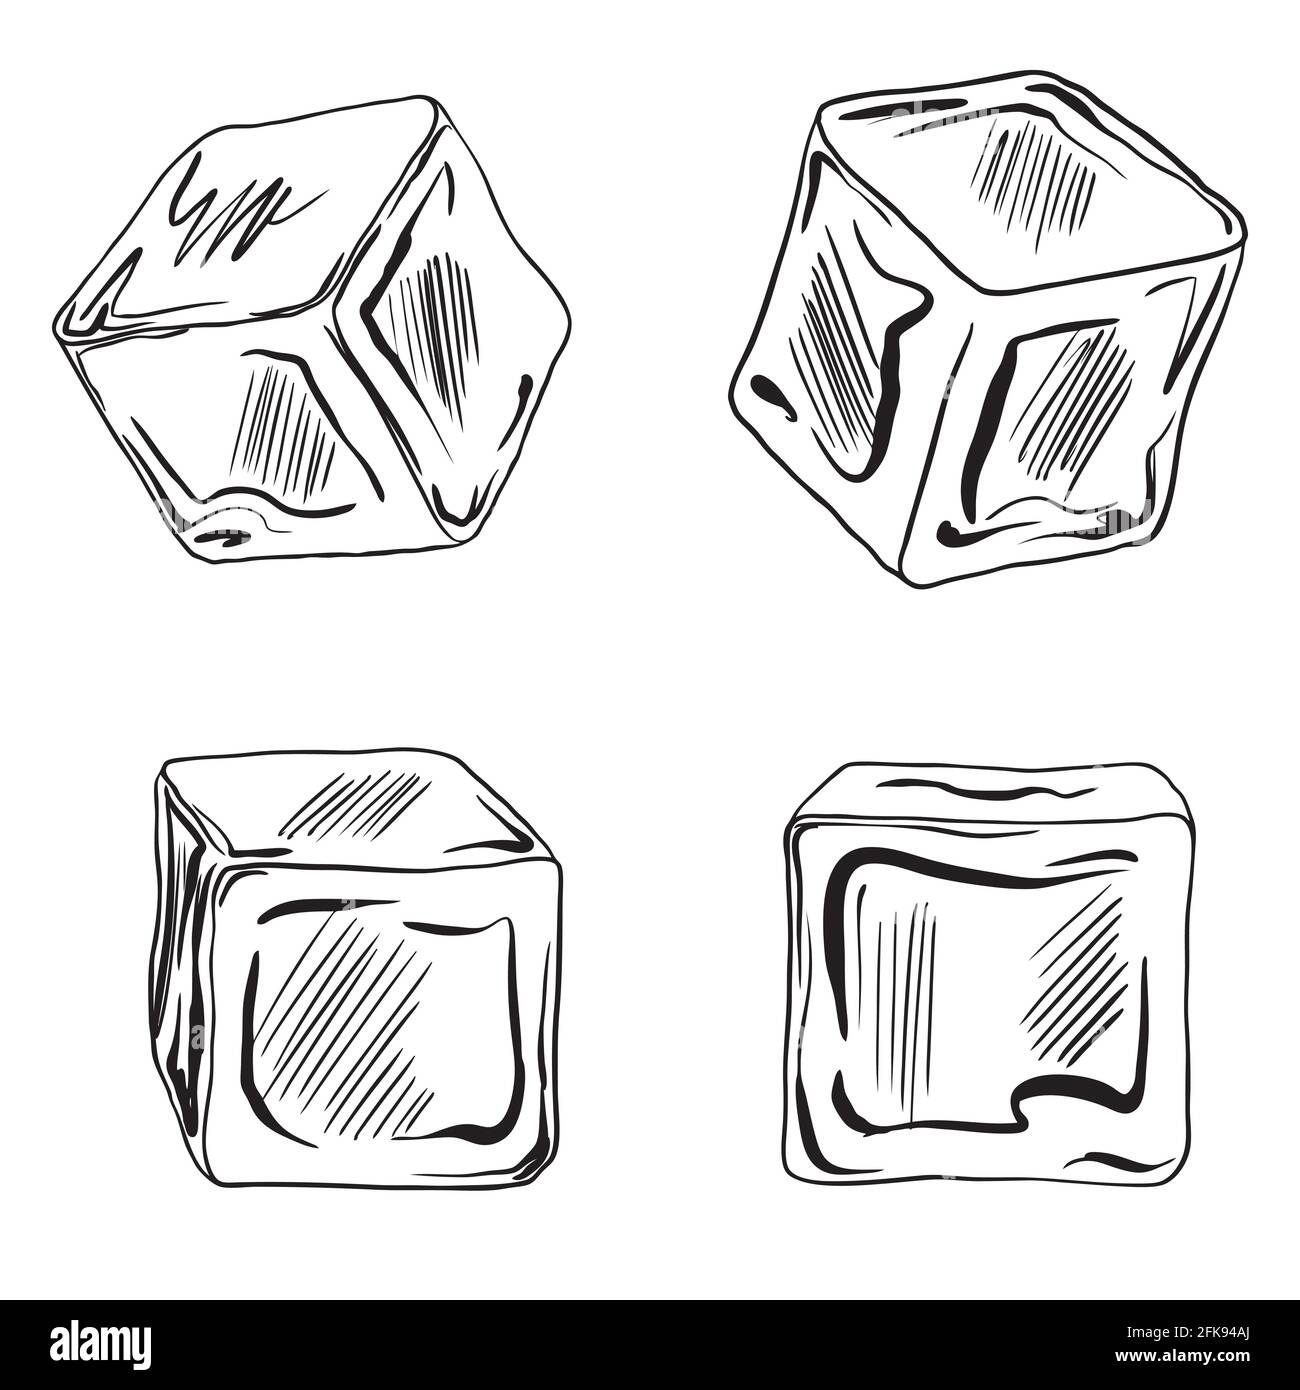 Cubetti di ghiaccio. Illustrazione vettoriale impostata su sfondo bianco. Illustrazione Vettoriale